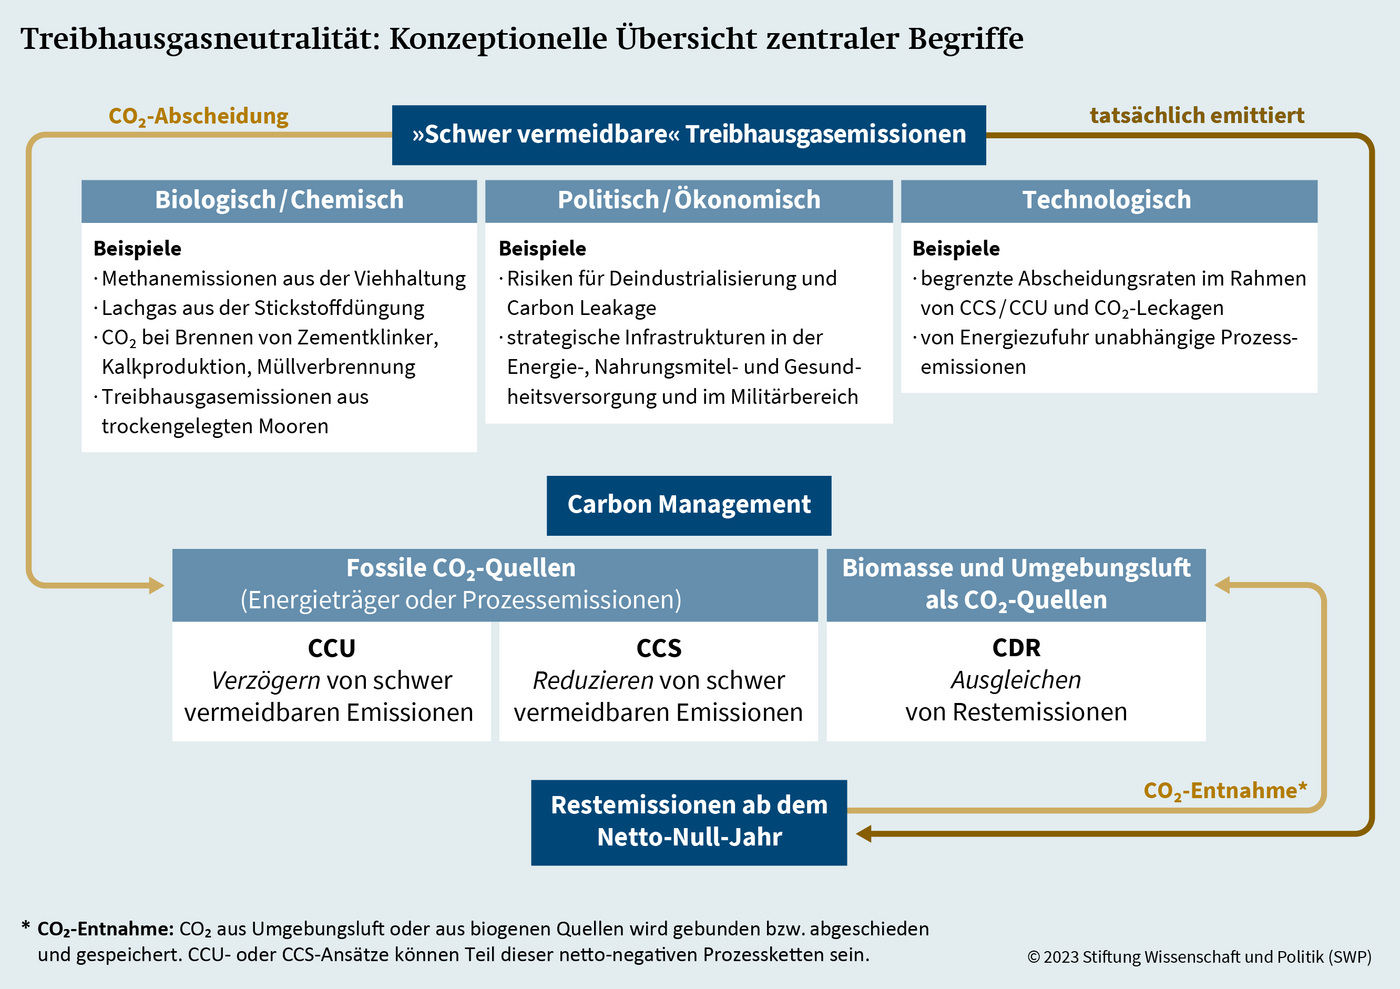 Quelle: Schenuit, Böttcher, Geden, 2023: Carbon Management: Chancen und Risiken für ambitionierte Klimapolitik 